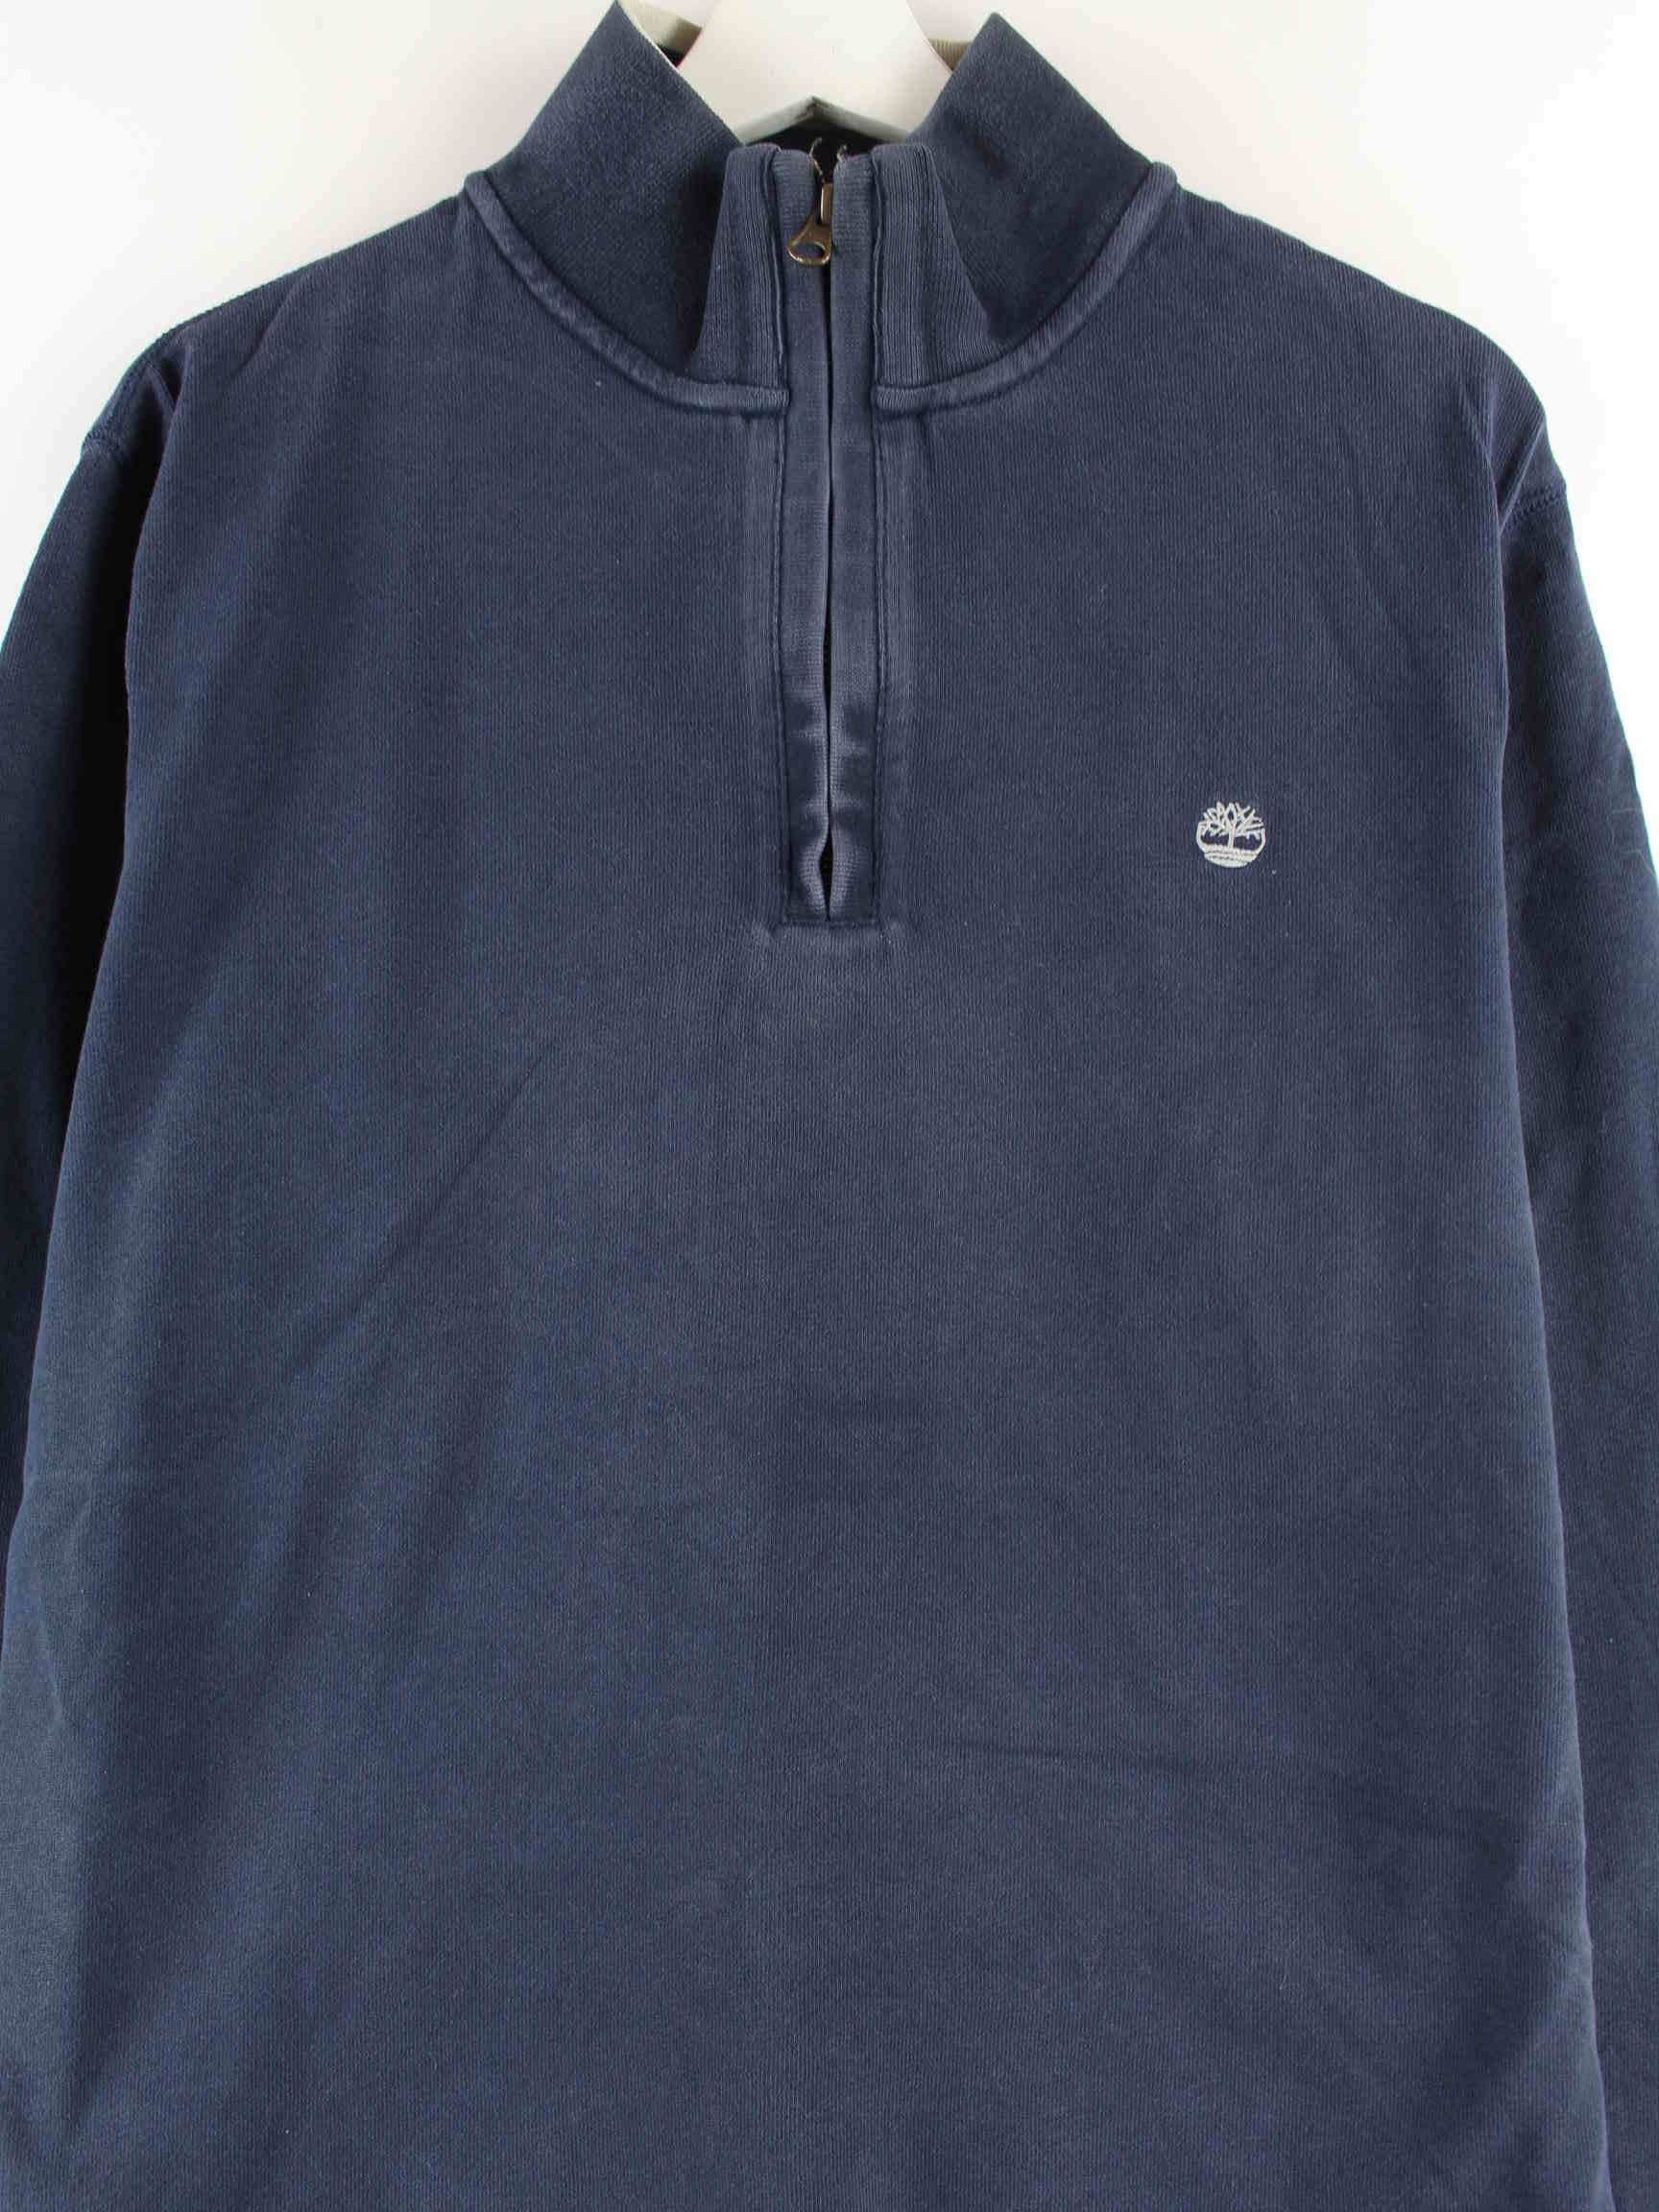 Timberland Basic Half Zip Sweater Blau L (detail image 1)